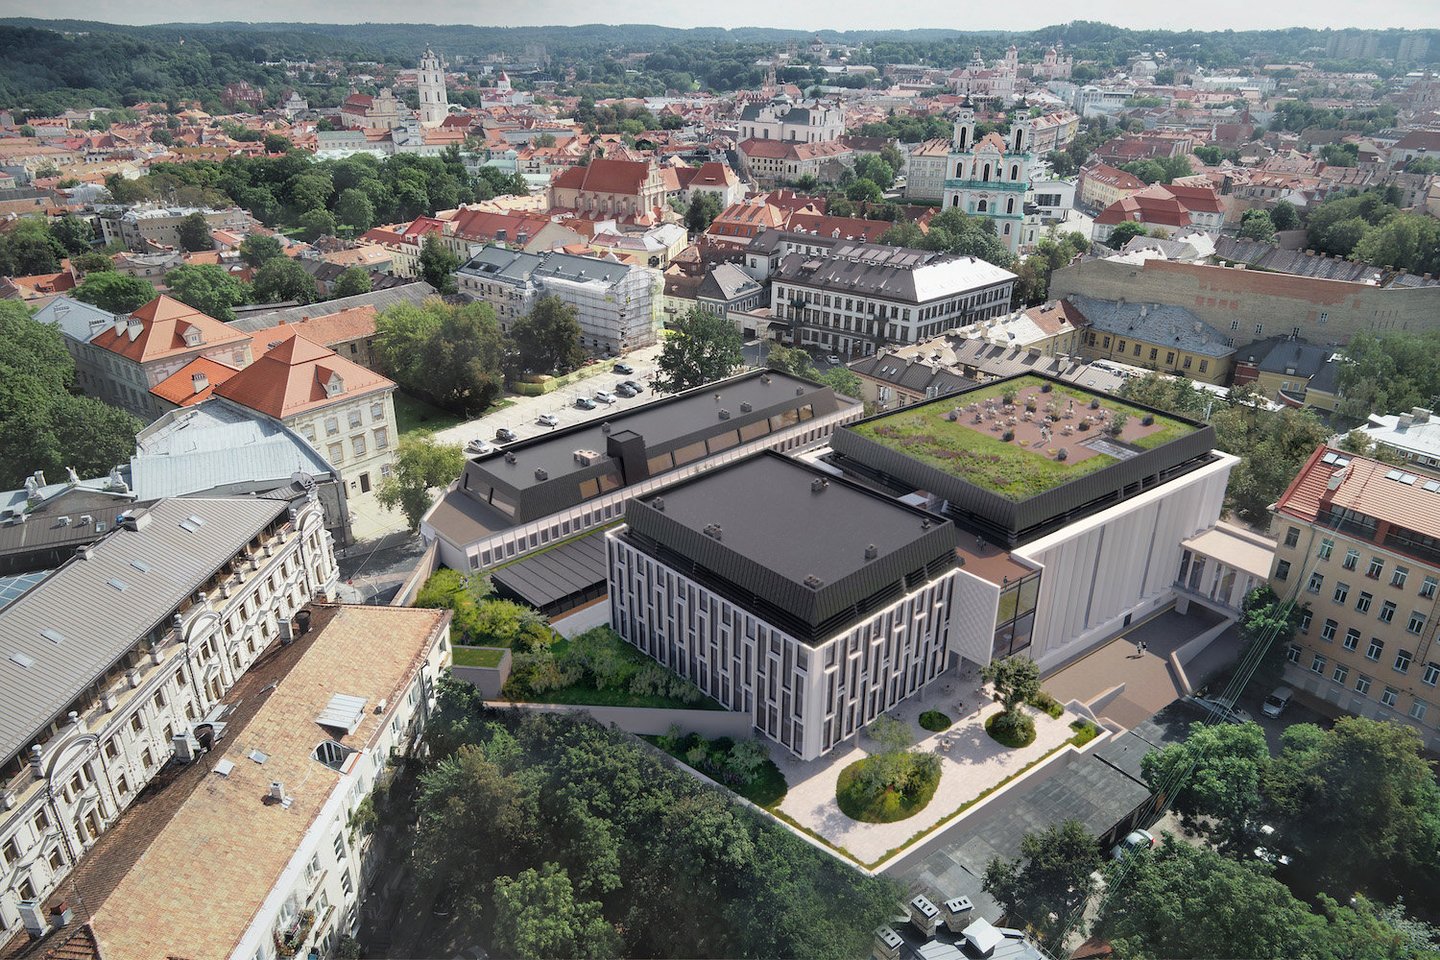 Investicijų į nekilnojamąjį turtą bendrovė „INVL Baltic Real Estate“ Vilniaus miesto savivaldybei svarstyti pateikė kartu su projektavimo įmone „Viltekta“ parengtus administracinio pastato sostinės senamiestyje, Palangos g. 4 / Vilniaus g. 33, rekonstrukcijos projektinius pasiūlymus.<br>Vizual.